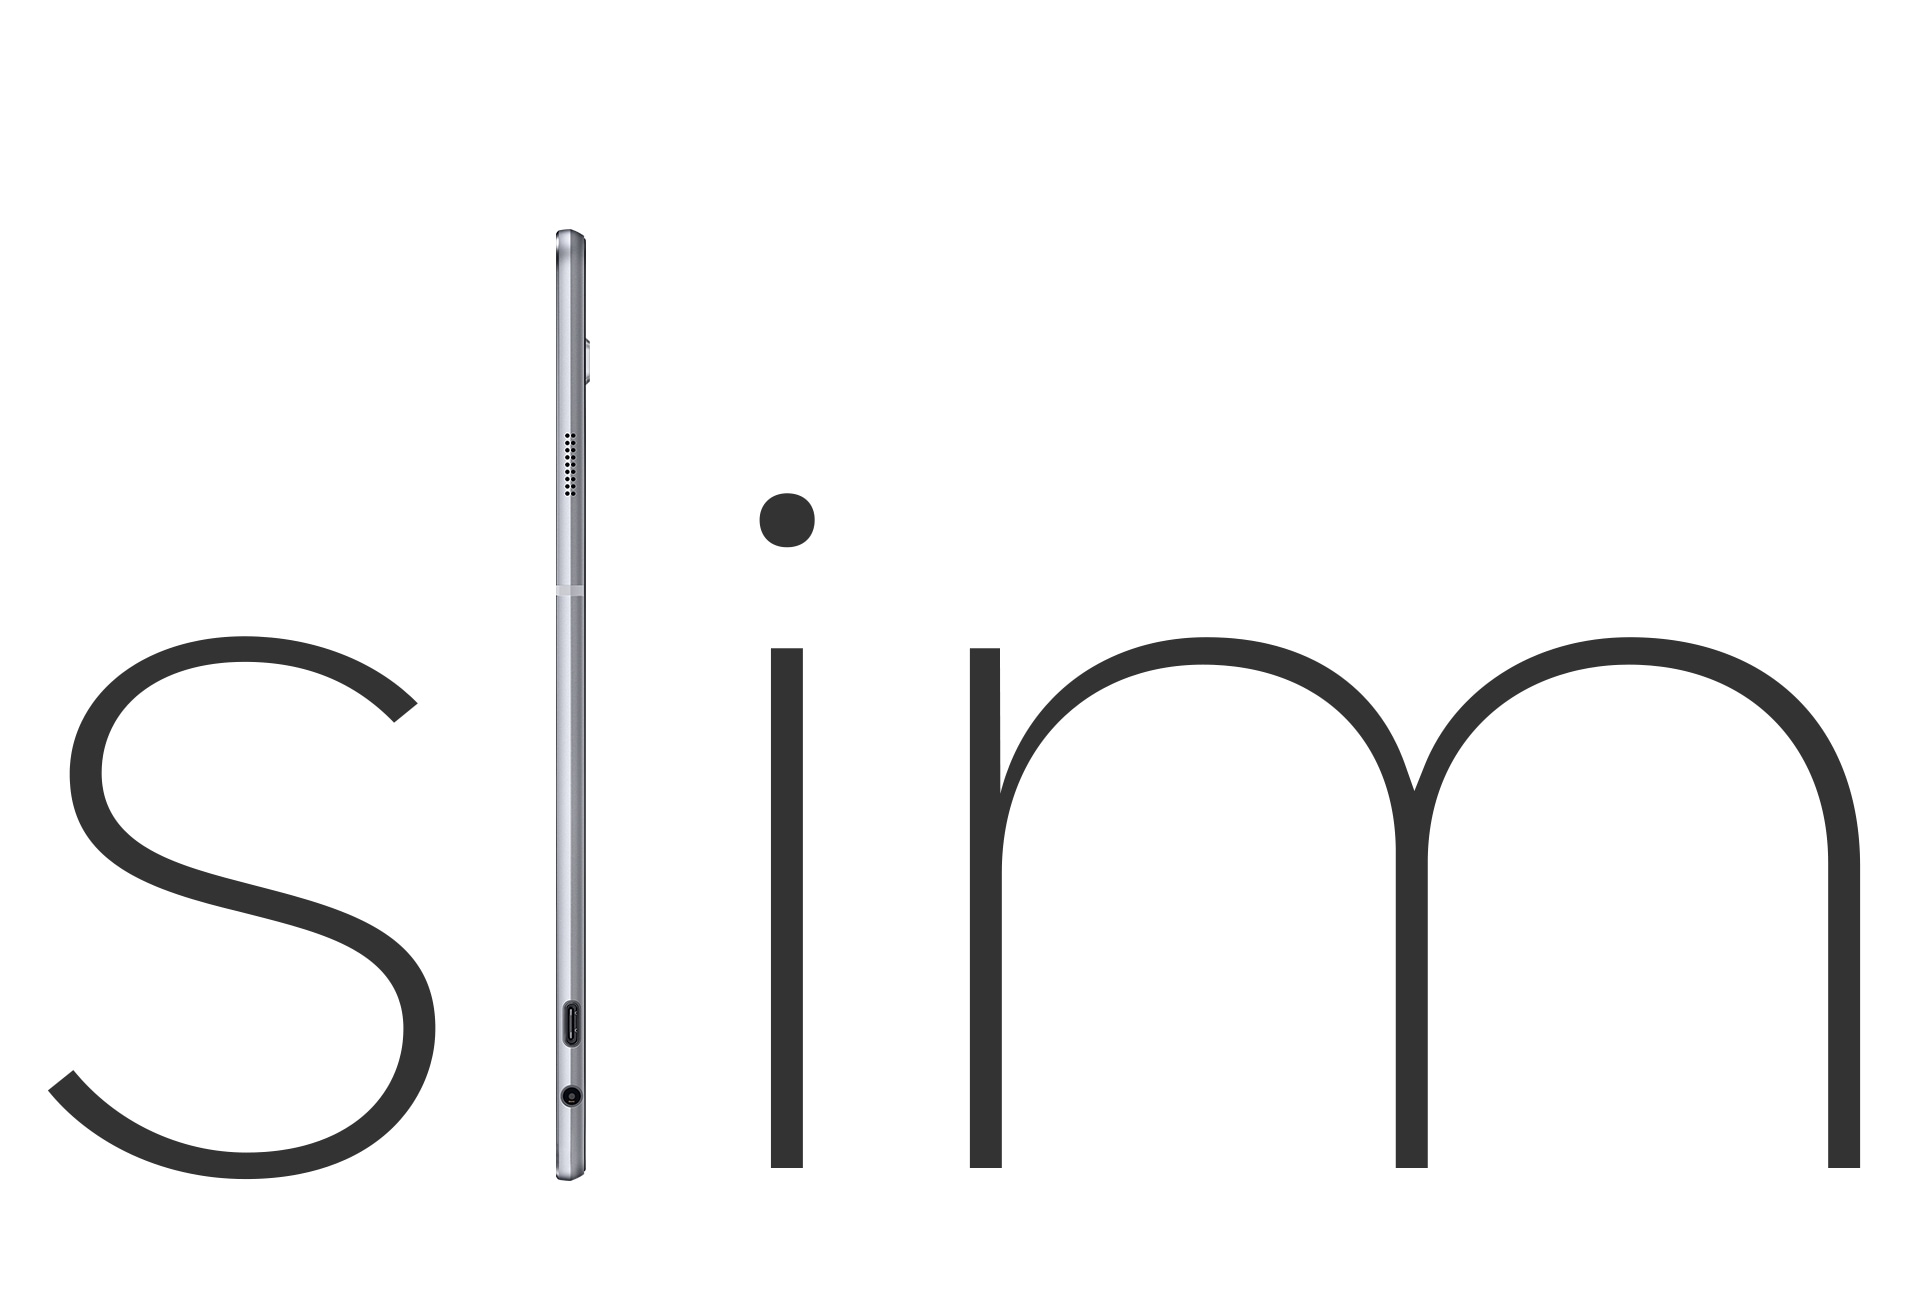 Il Galaxy TabPro S è in piedi di lato e prende il posto della lettera L nella parola SLIM